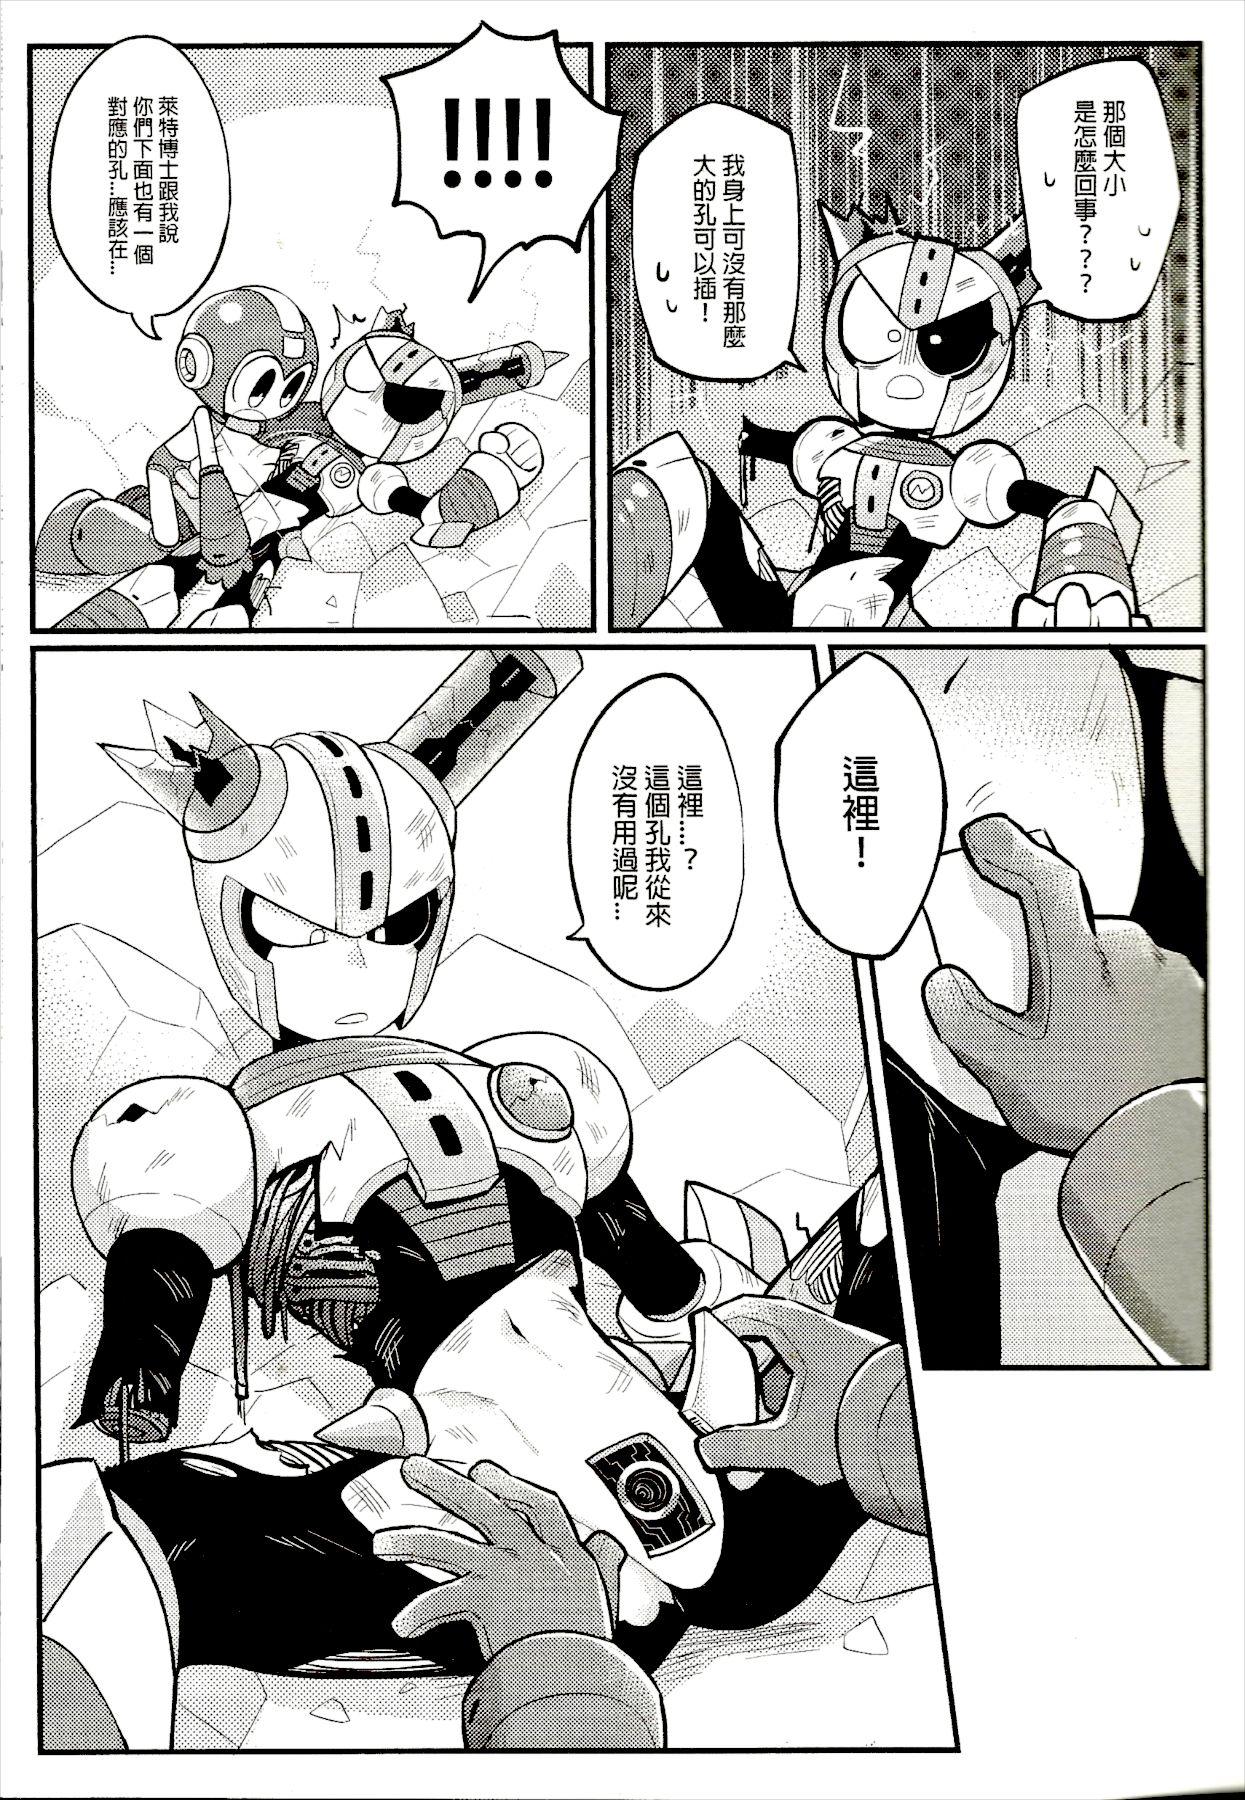 Nut (Finish Prison) Luòkè rén 11-FUSEMAN gōnglüè běn | "Rockman 11-FUSEMAN Raiders" (Mega Man) - Megaman Mmd - Page 10